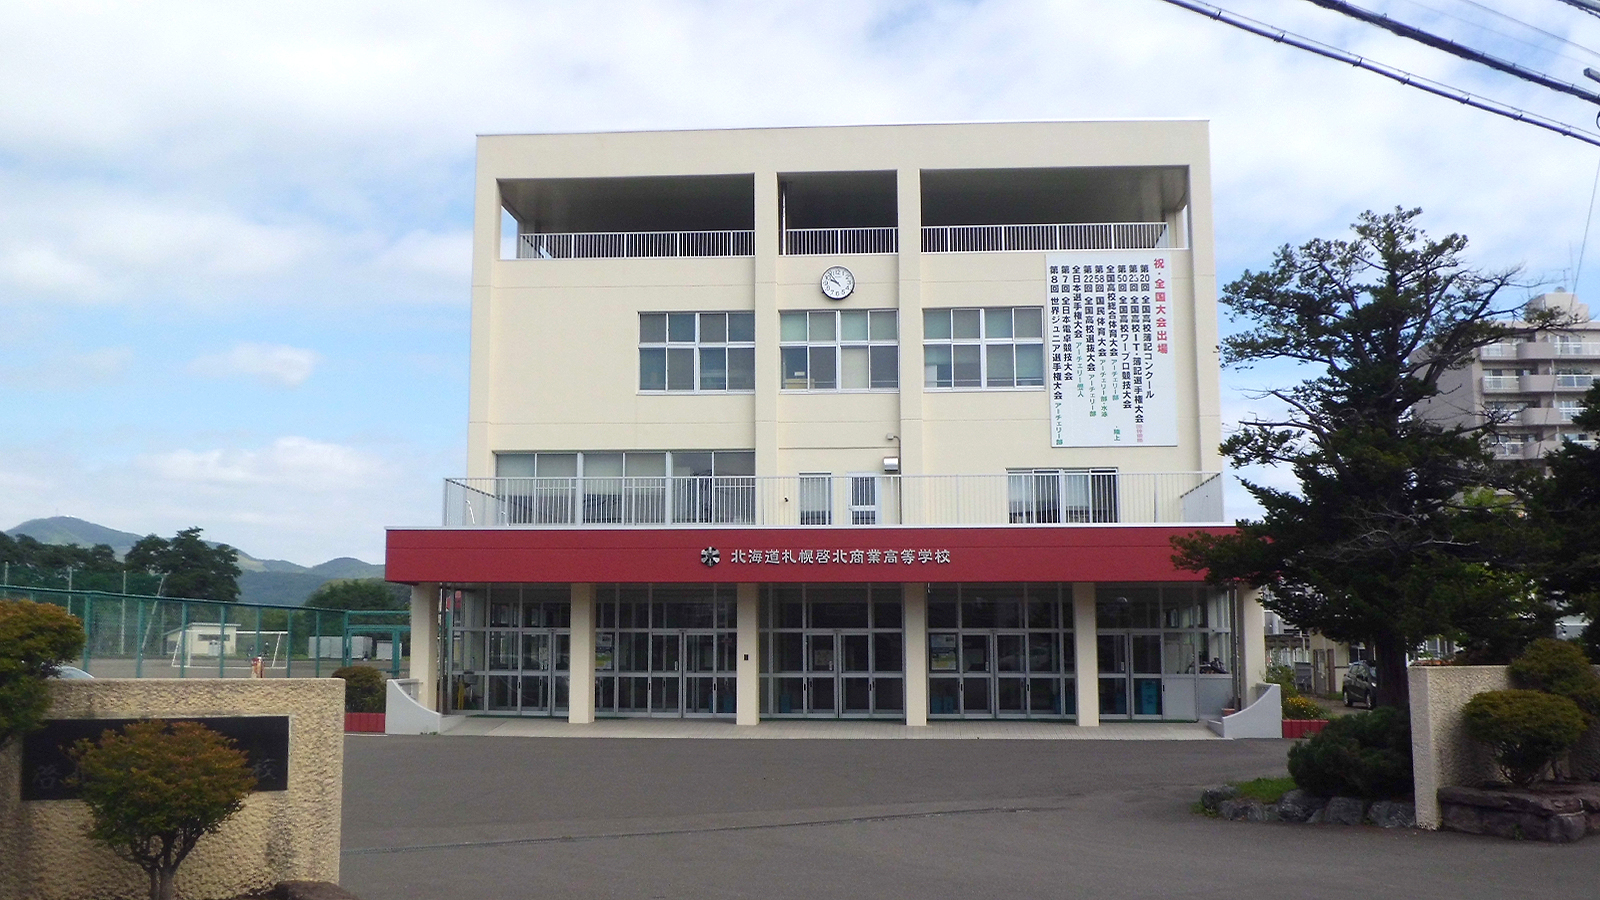 札幌啓北商業高校の校舎正面